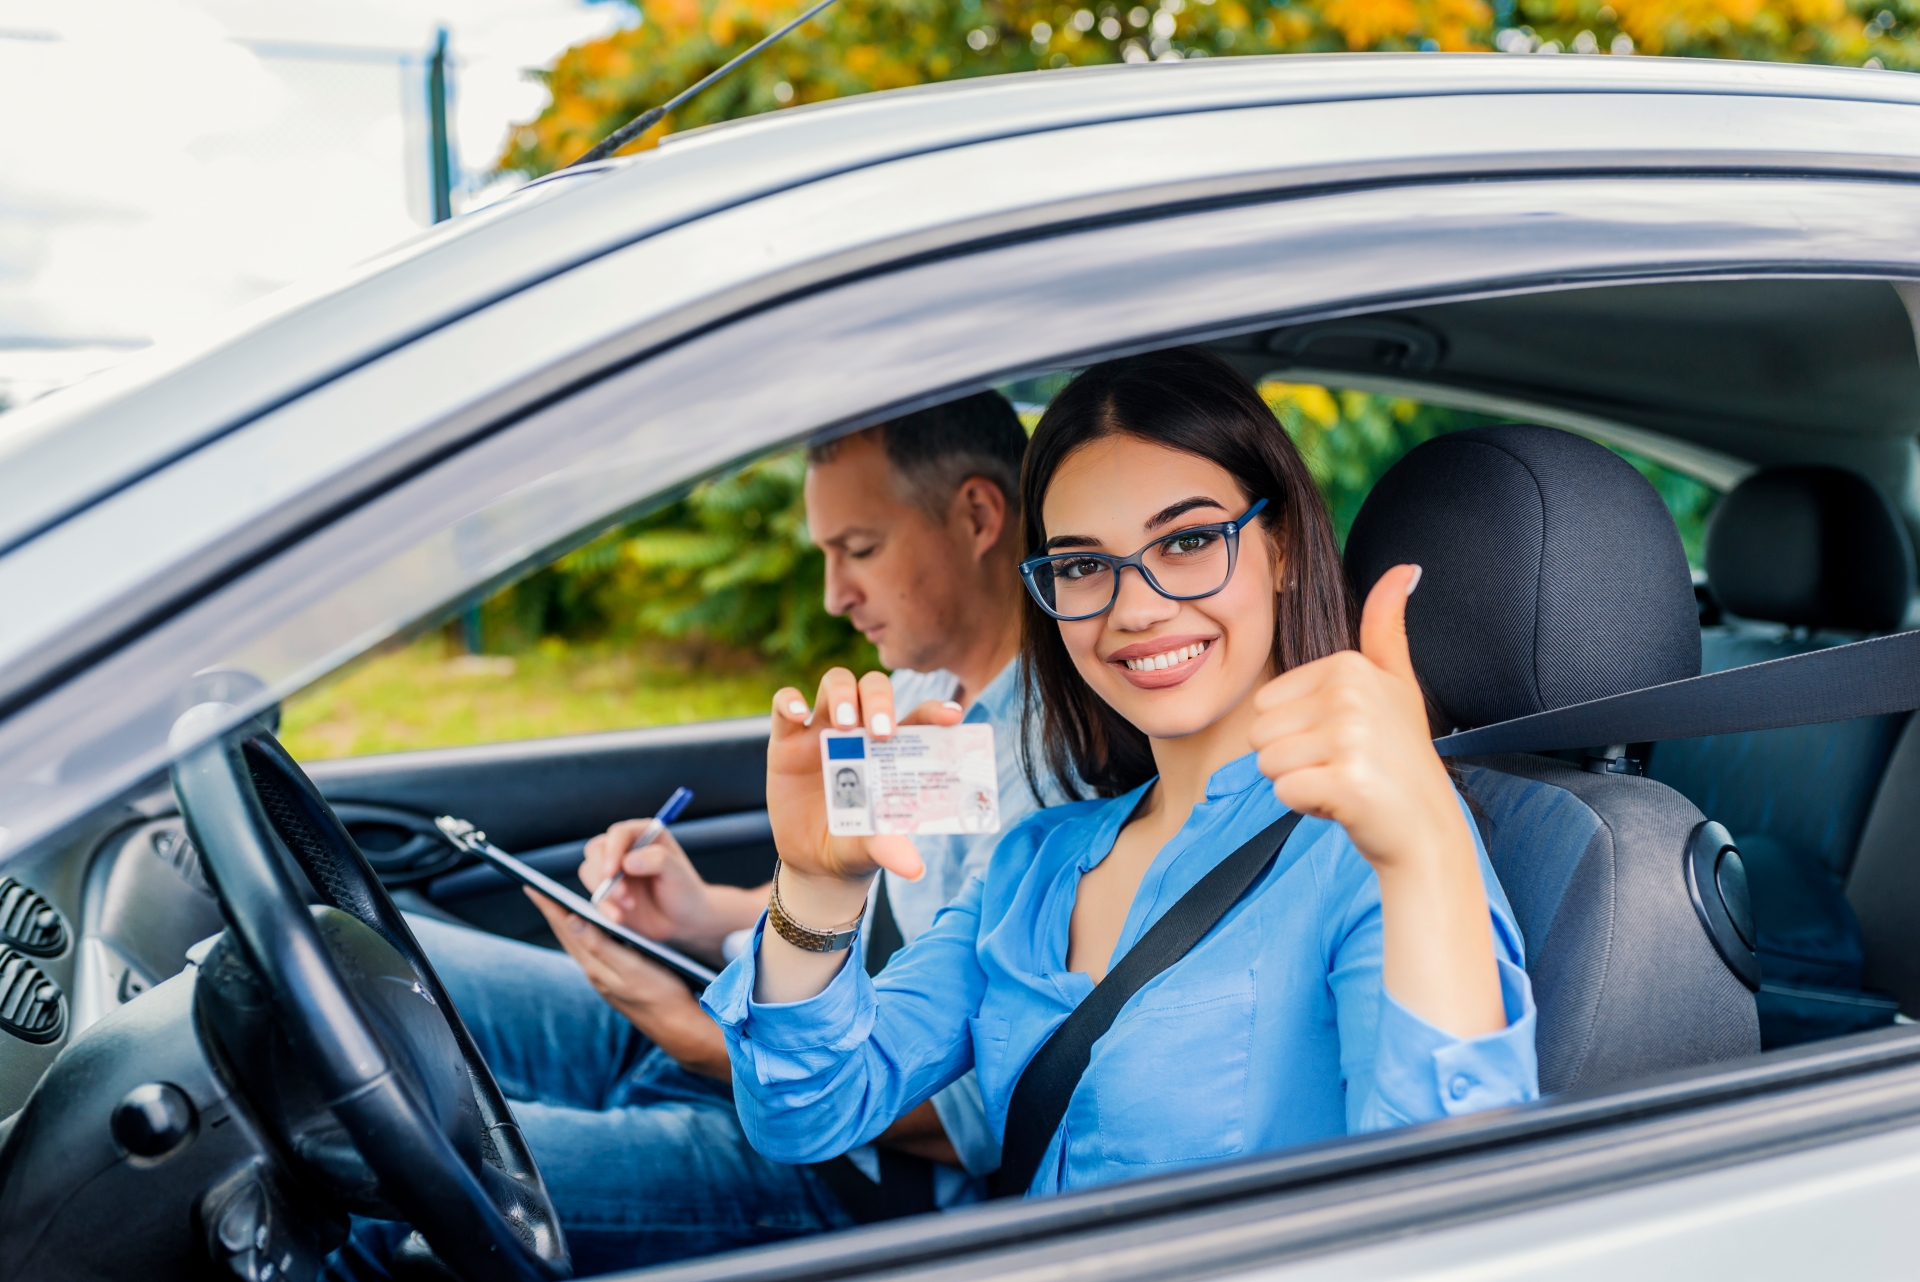 Cât timp durează școala de șoferi și care este numărul minimum de ore obligatorii de condus